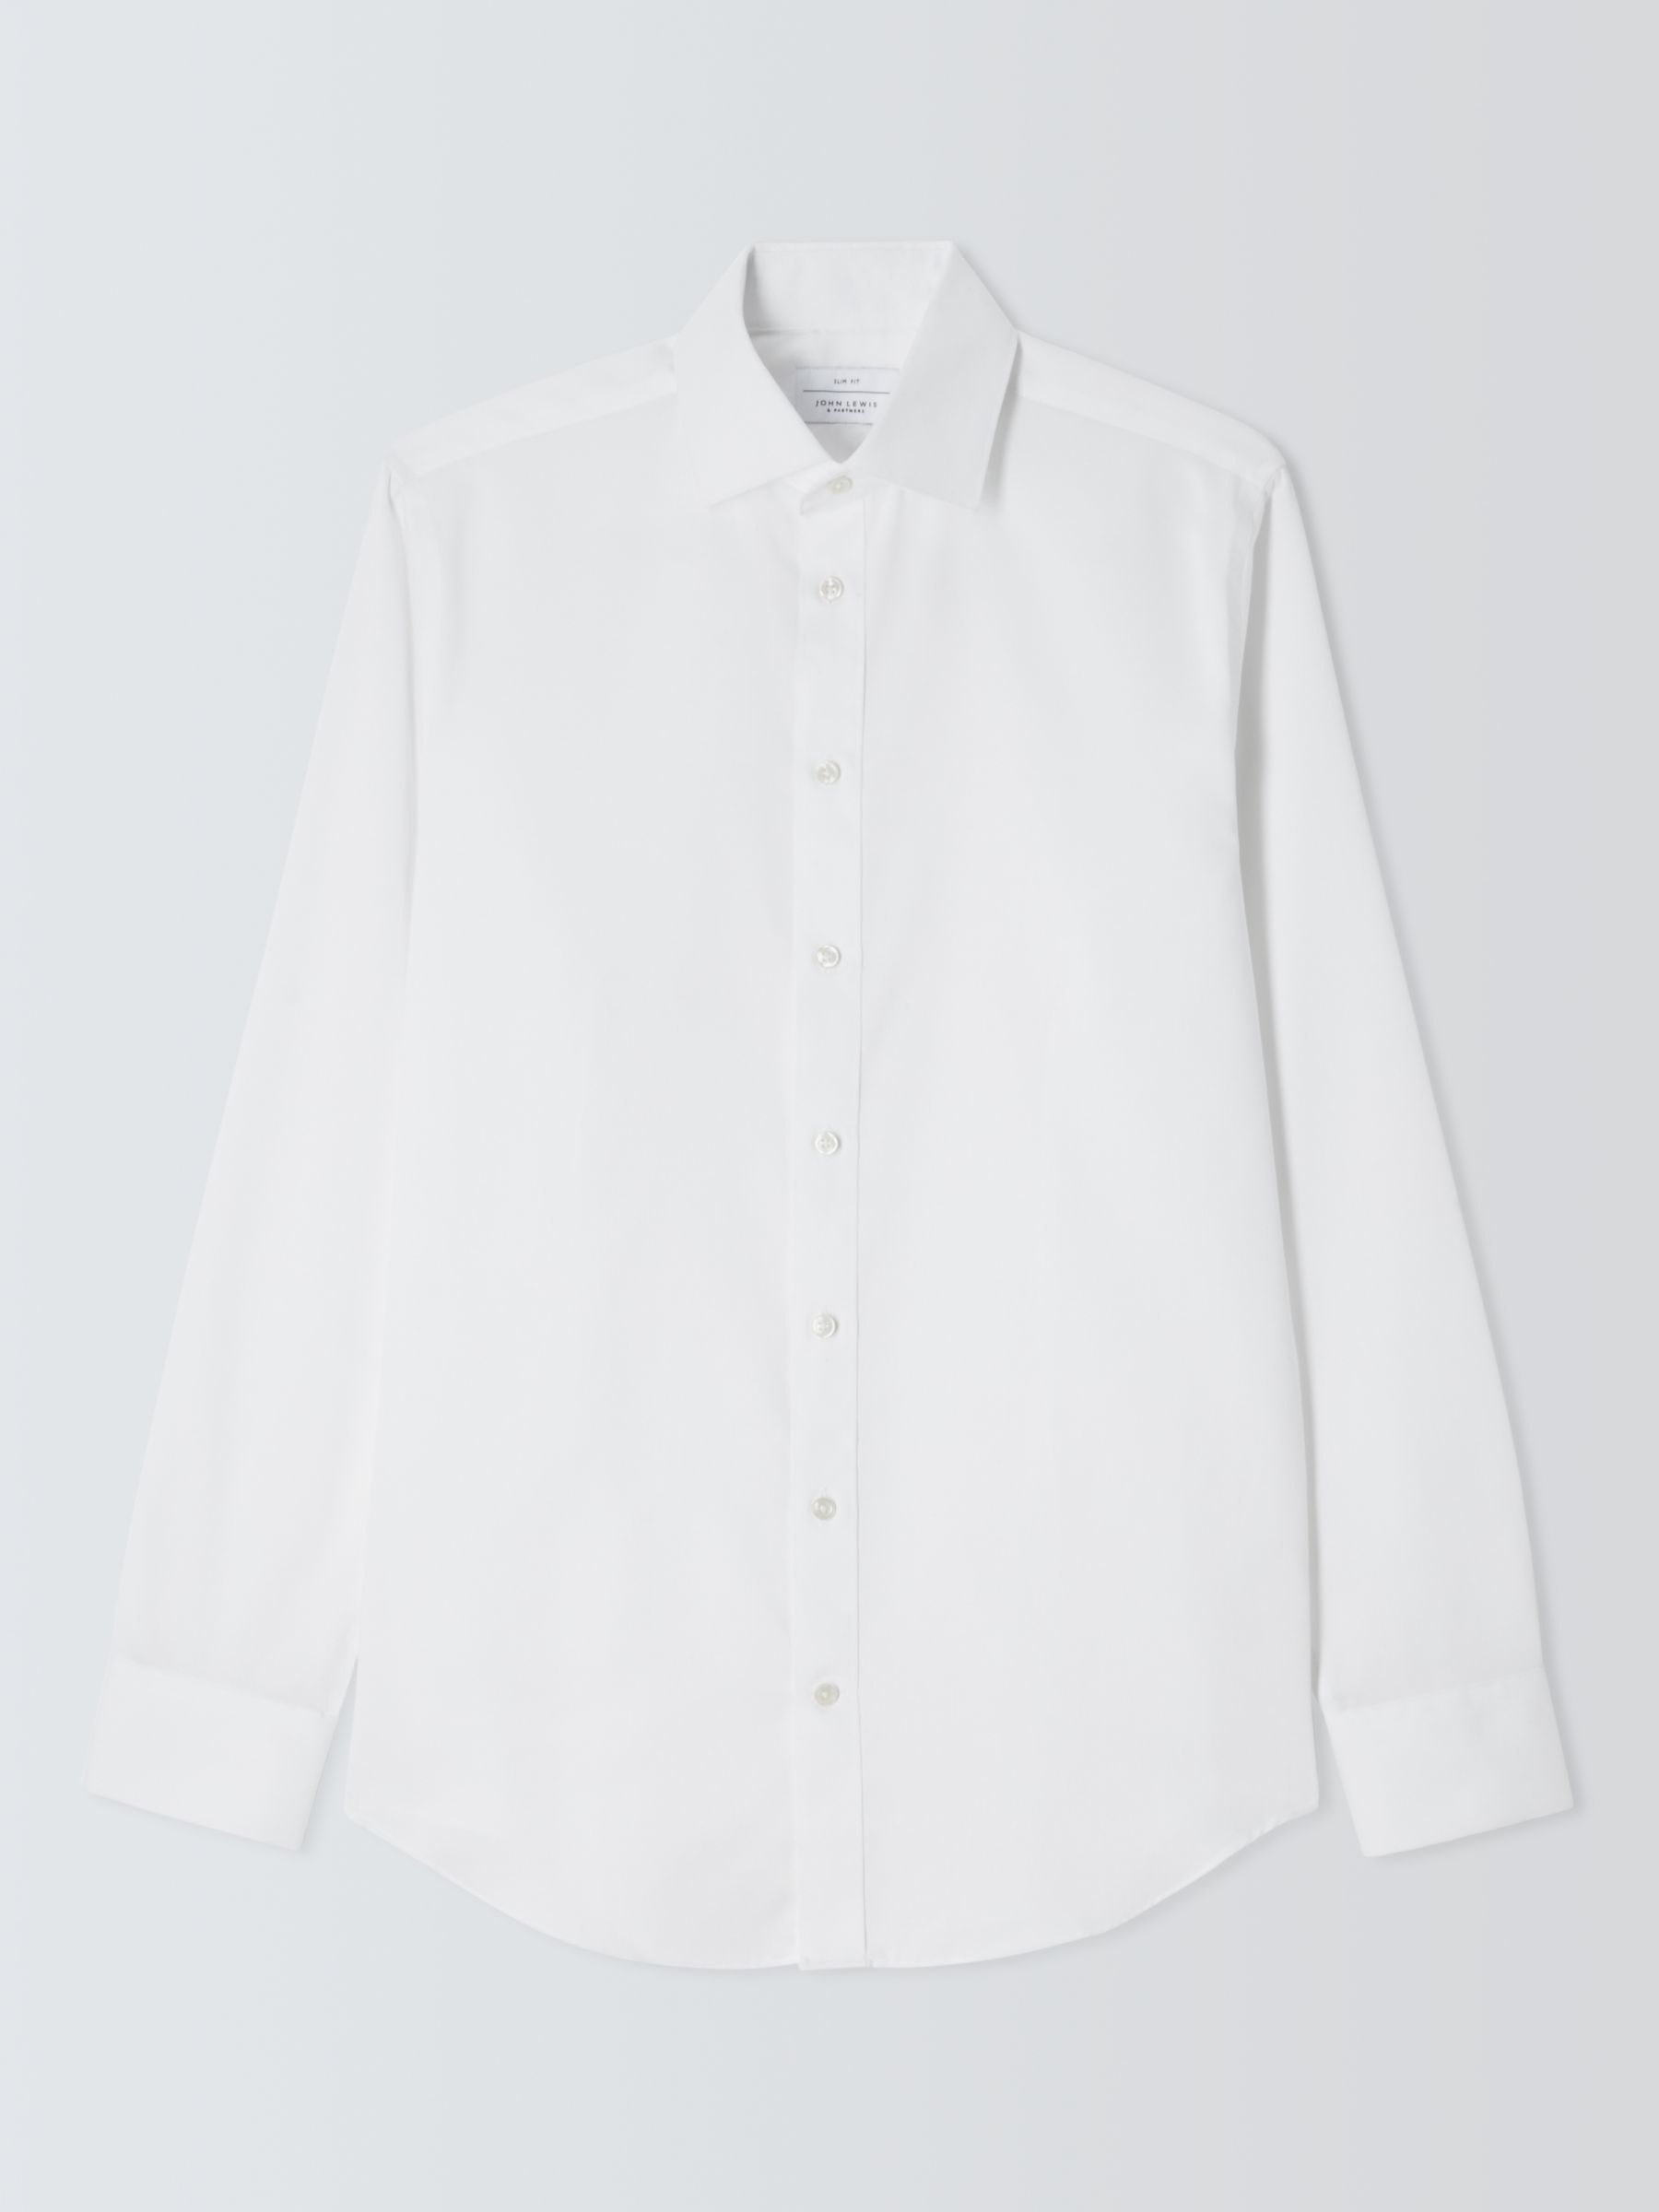 John Lewis Non Iron Dobby Slim Fit Shirt, White, 17.5R